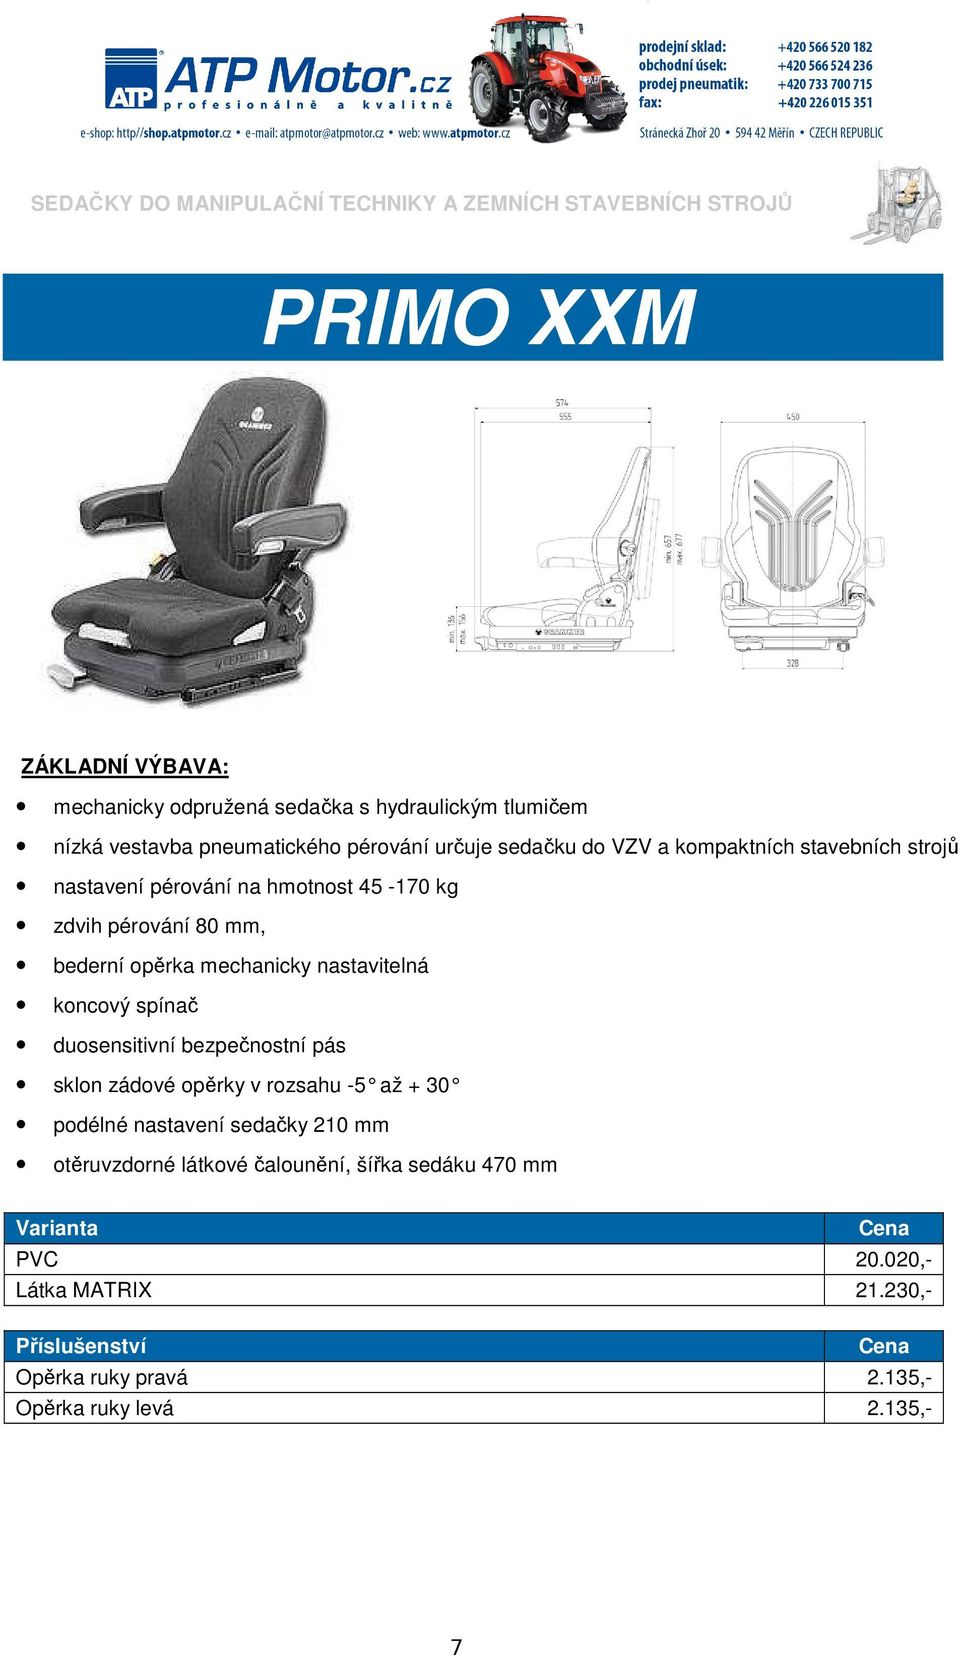 коментатор клетка биене sedadlo mechanicky odpružené do 170 kg -  somhipromobuilding.com